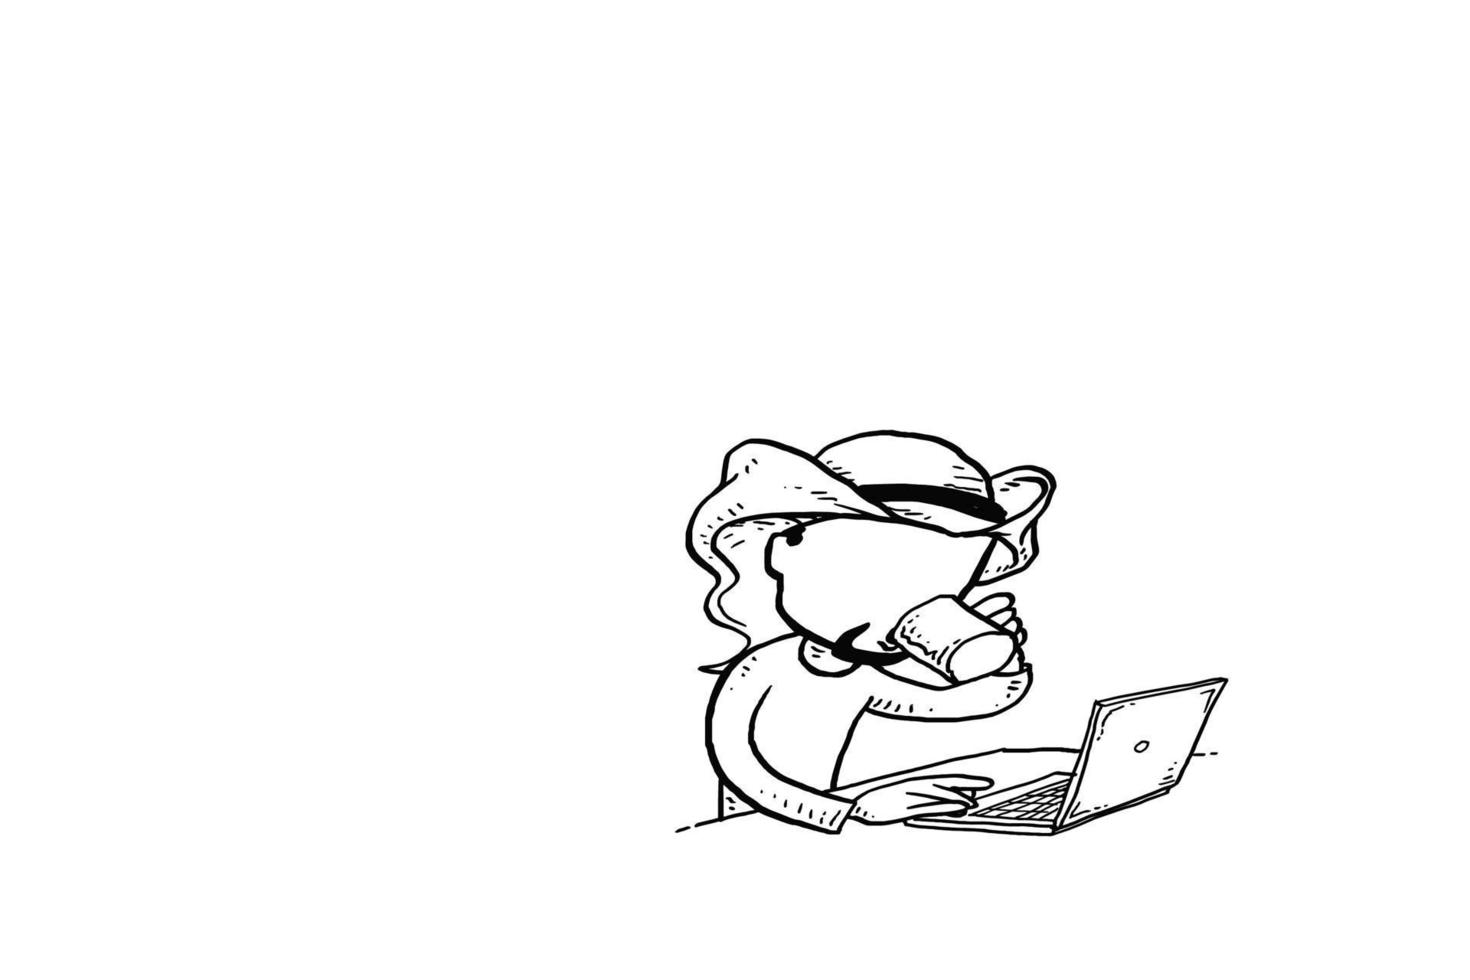 uomo d'affari arabo sorseggiando caffè sulla sua scrivania mentre naviga in internet. disegno dell'illustrazione di vettore del fumetto